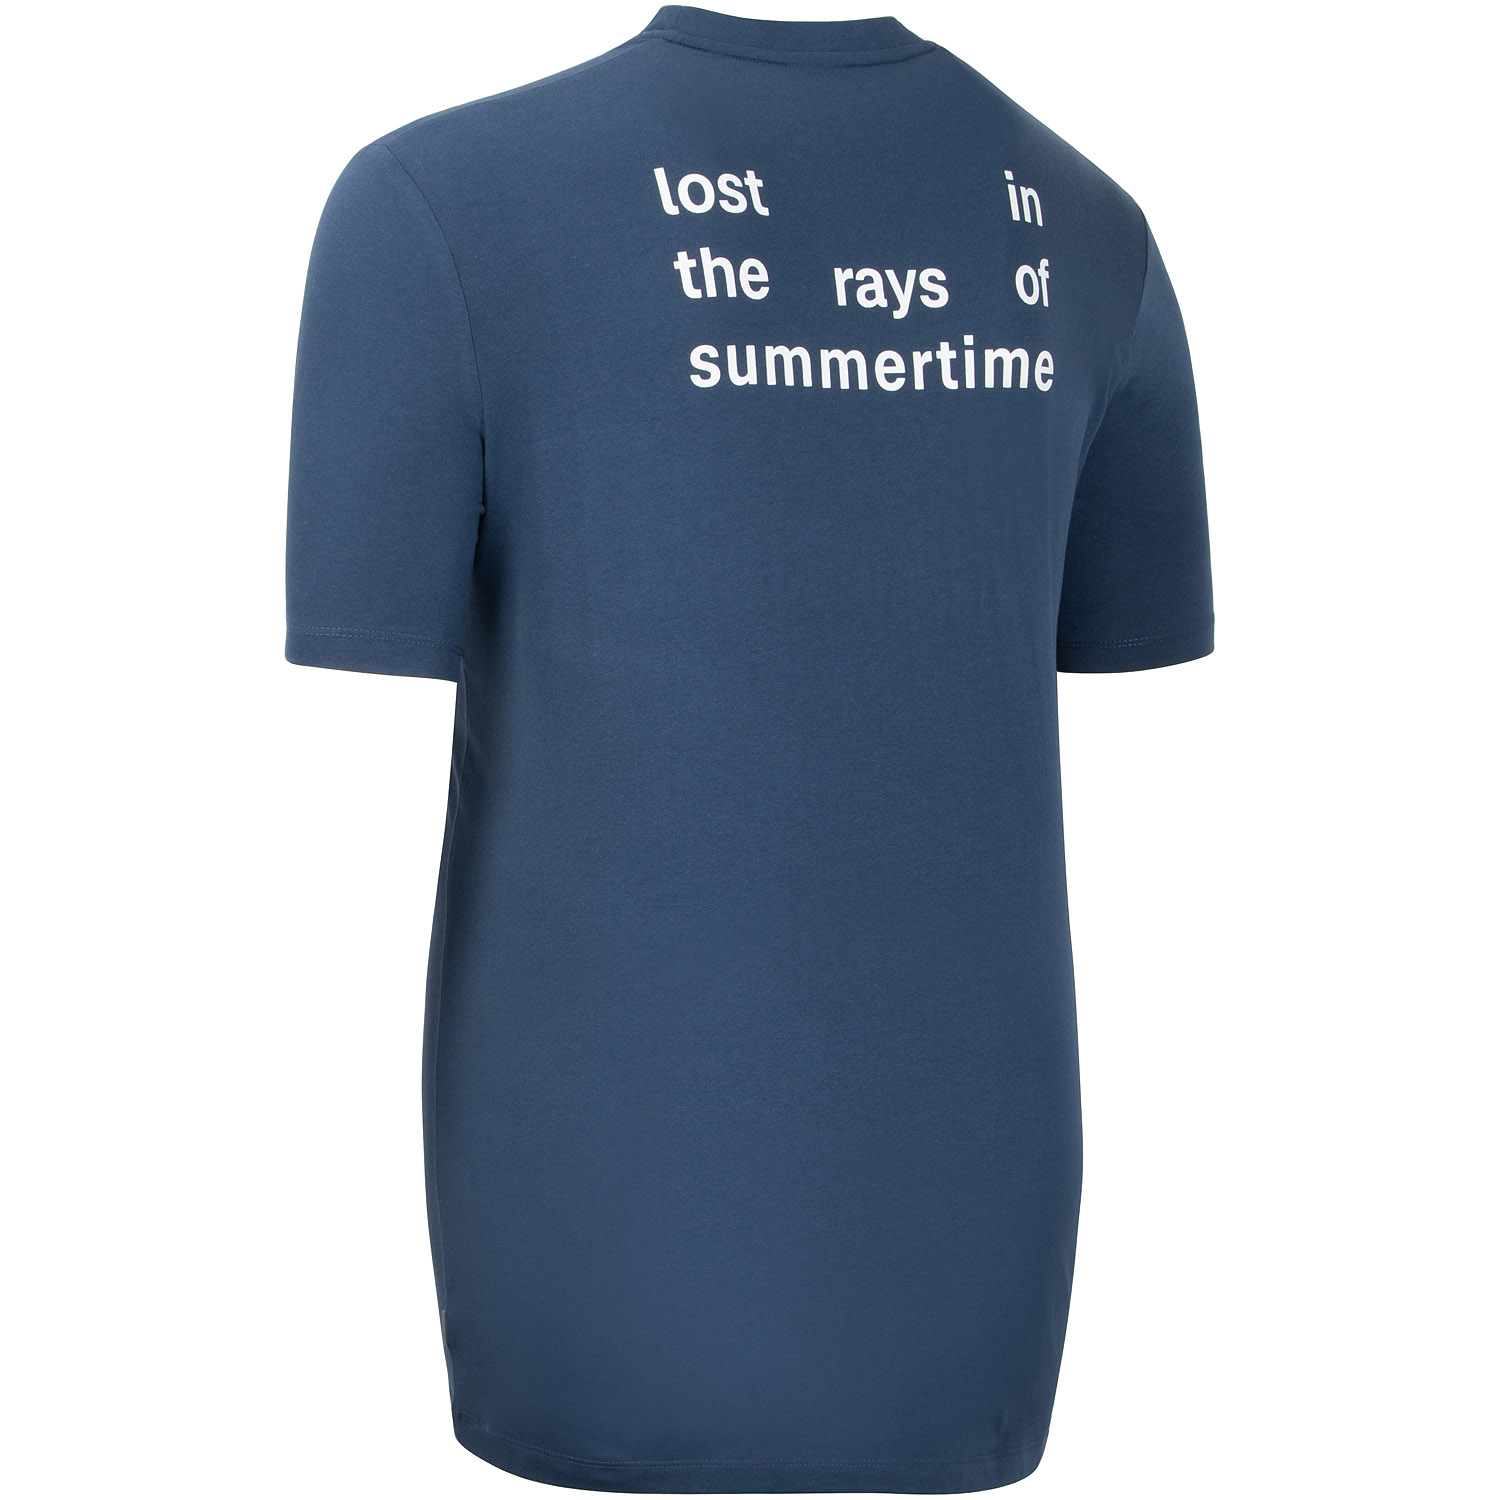 S.OLIVER T-Shirt - EXTRA lang Herrenmode kaufen Übergrößen blau in